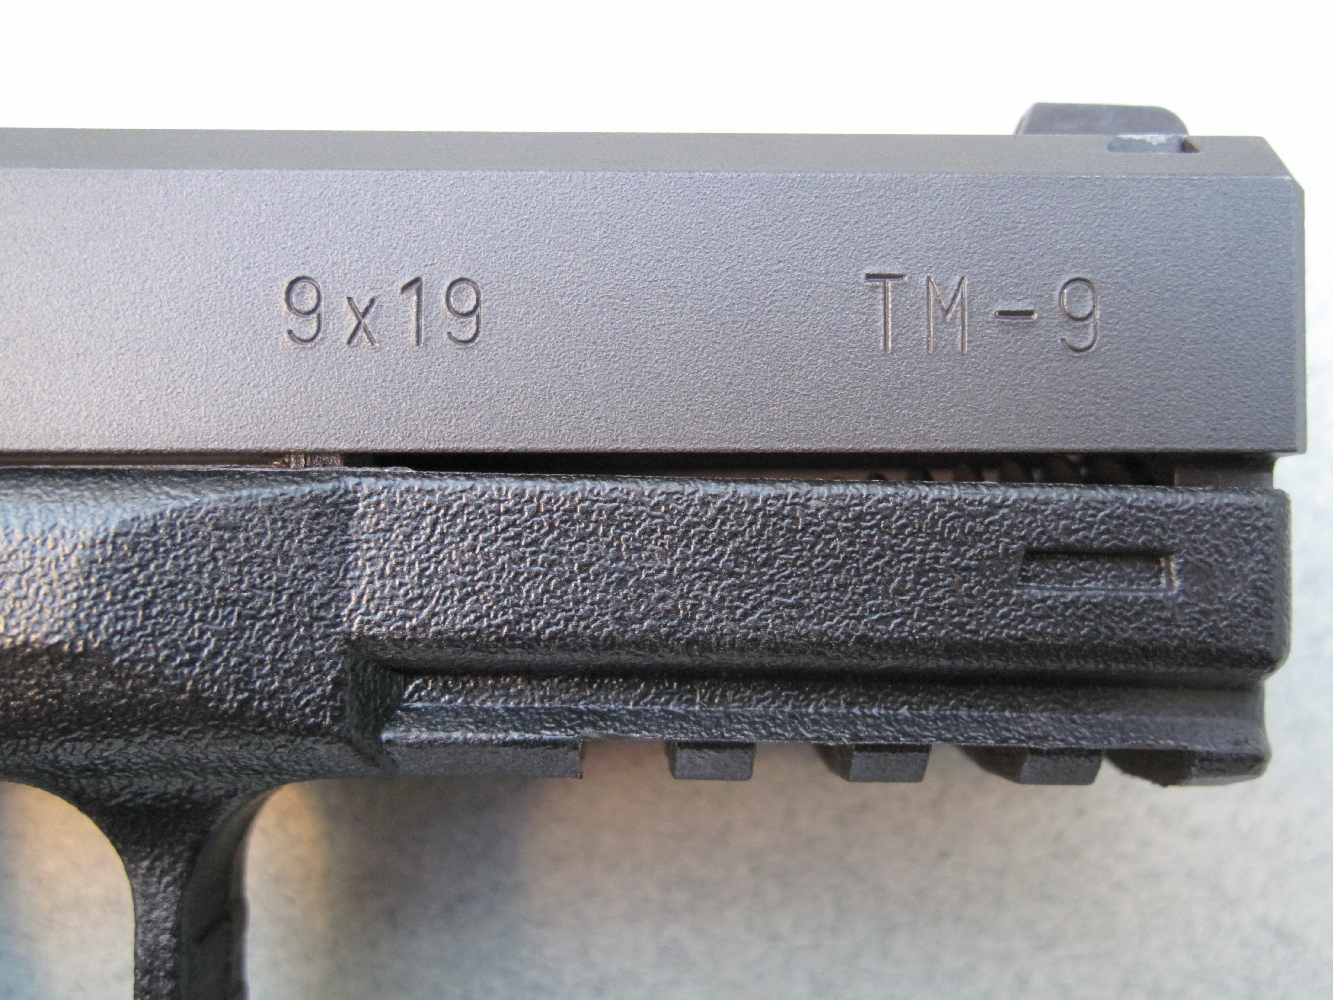 L’indication du calibre 9x19 mm et la dénomination du modèle sont frappés sur le flanc droit de la glissière.